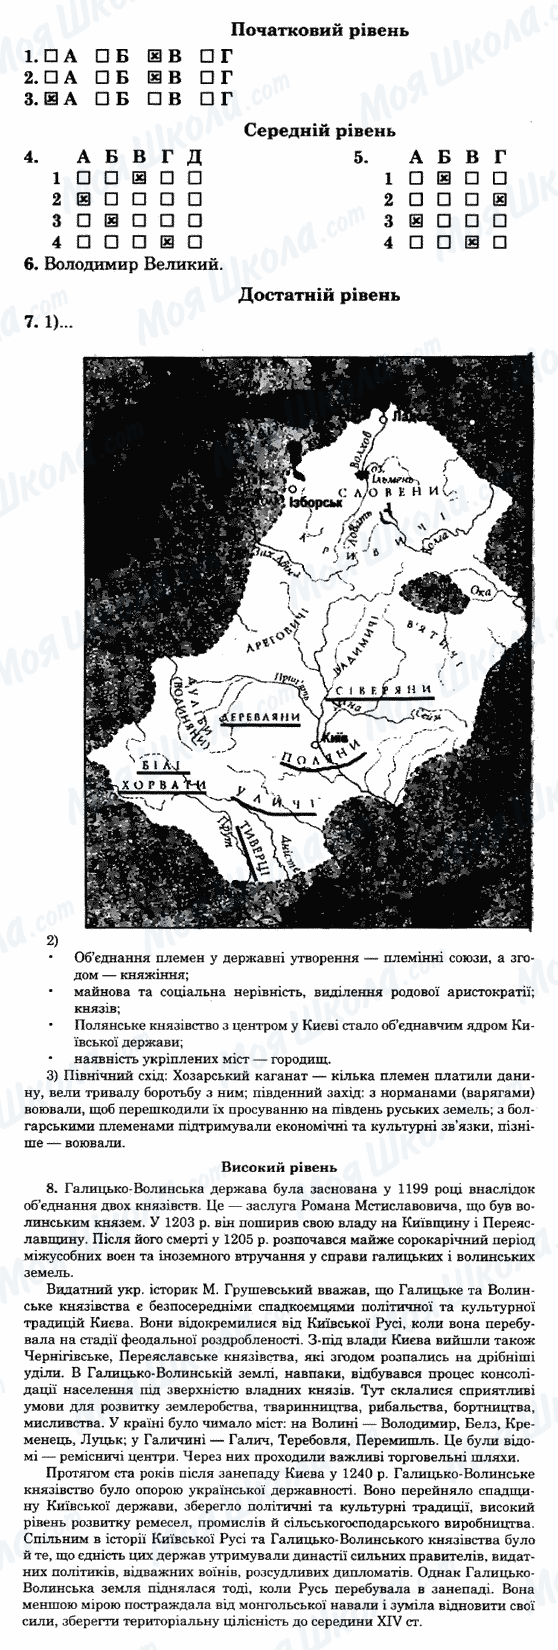 ГДЗ Історія України 7 клас сторінка 24-варіант